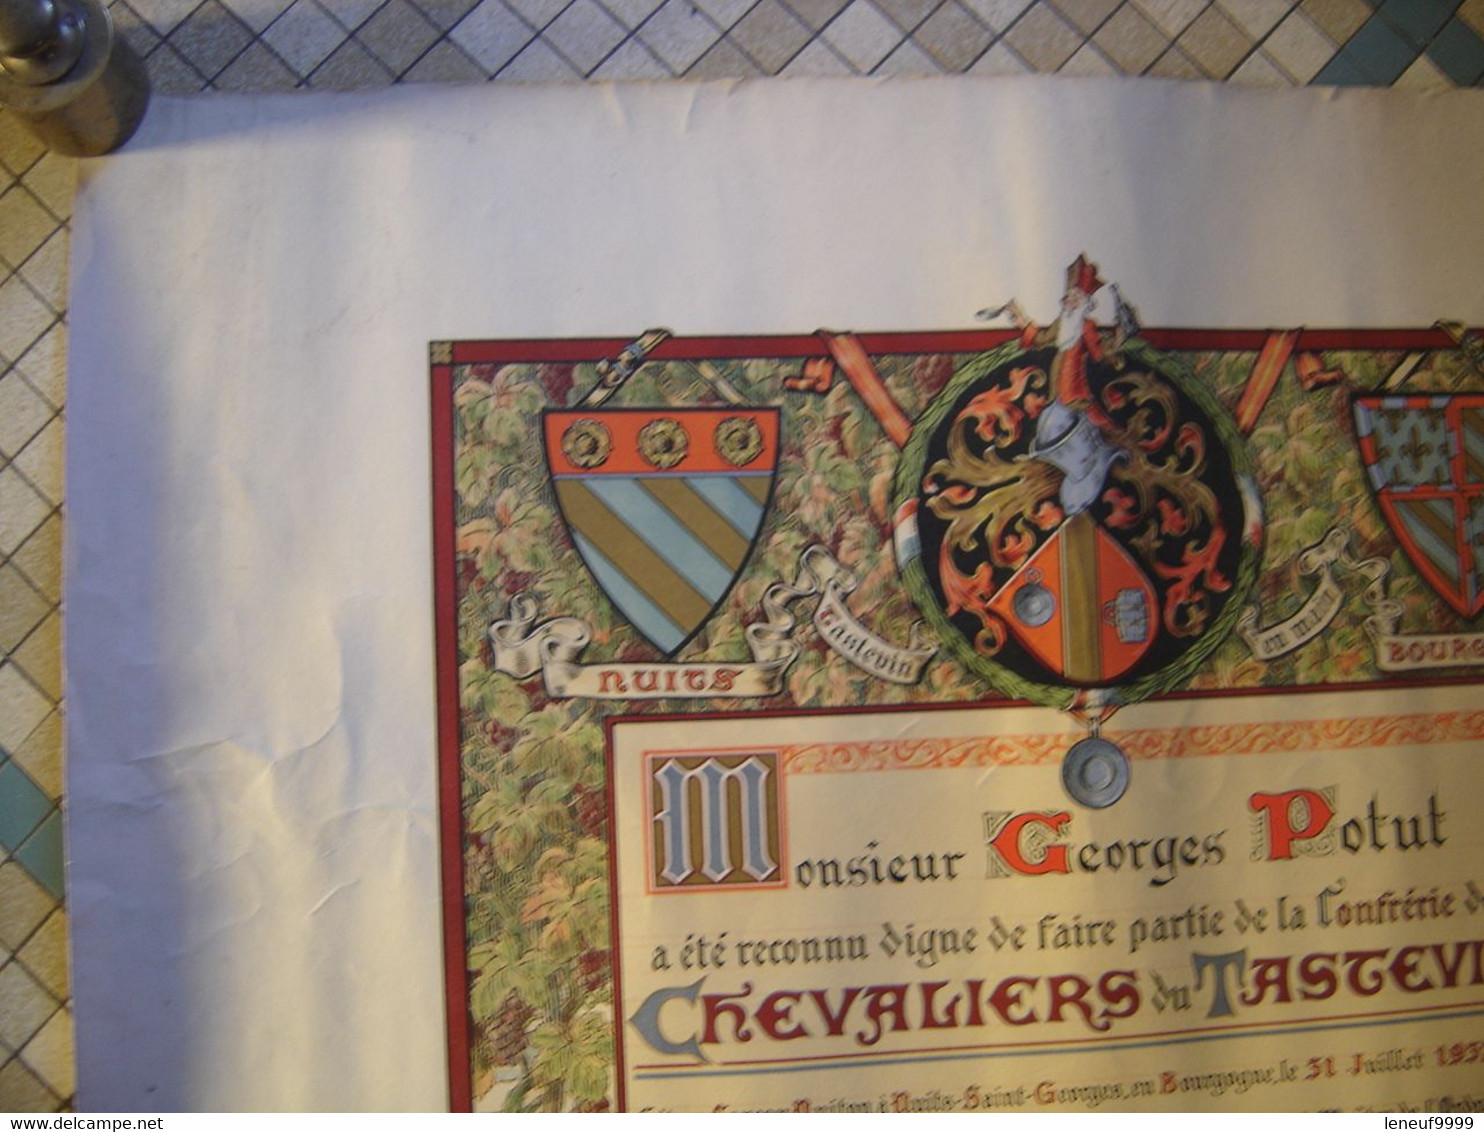 Ancien Diplome Brevet 1937 CHEVALIERS DU TASTEVIN HANSI Vin Nuit St Georges - Manifesti